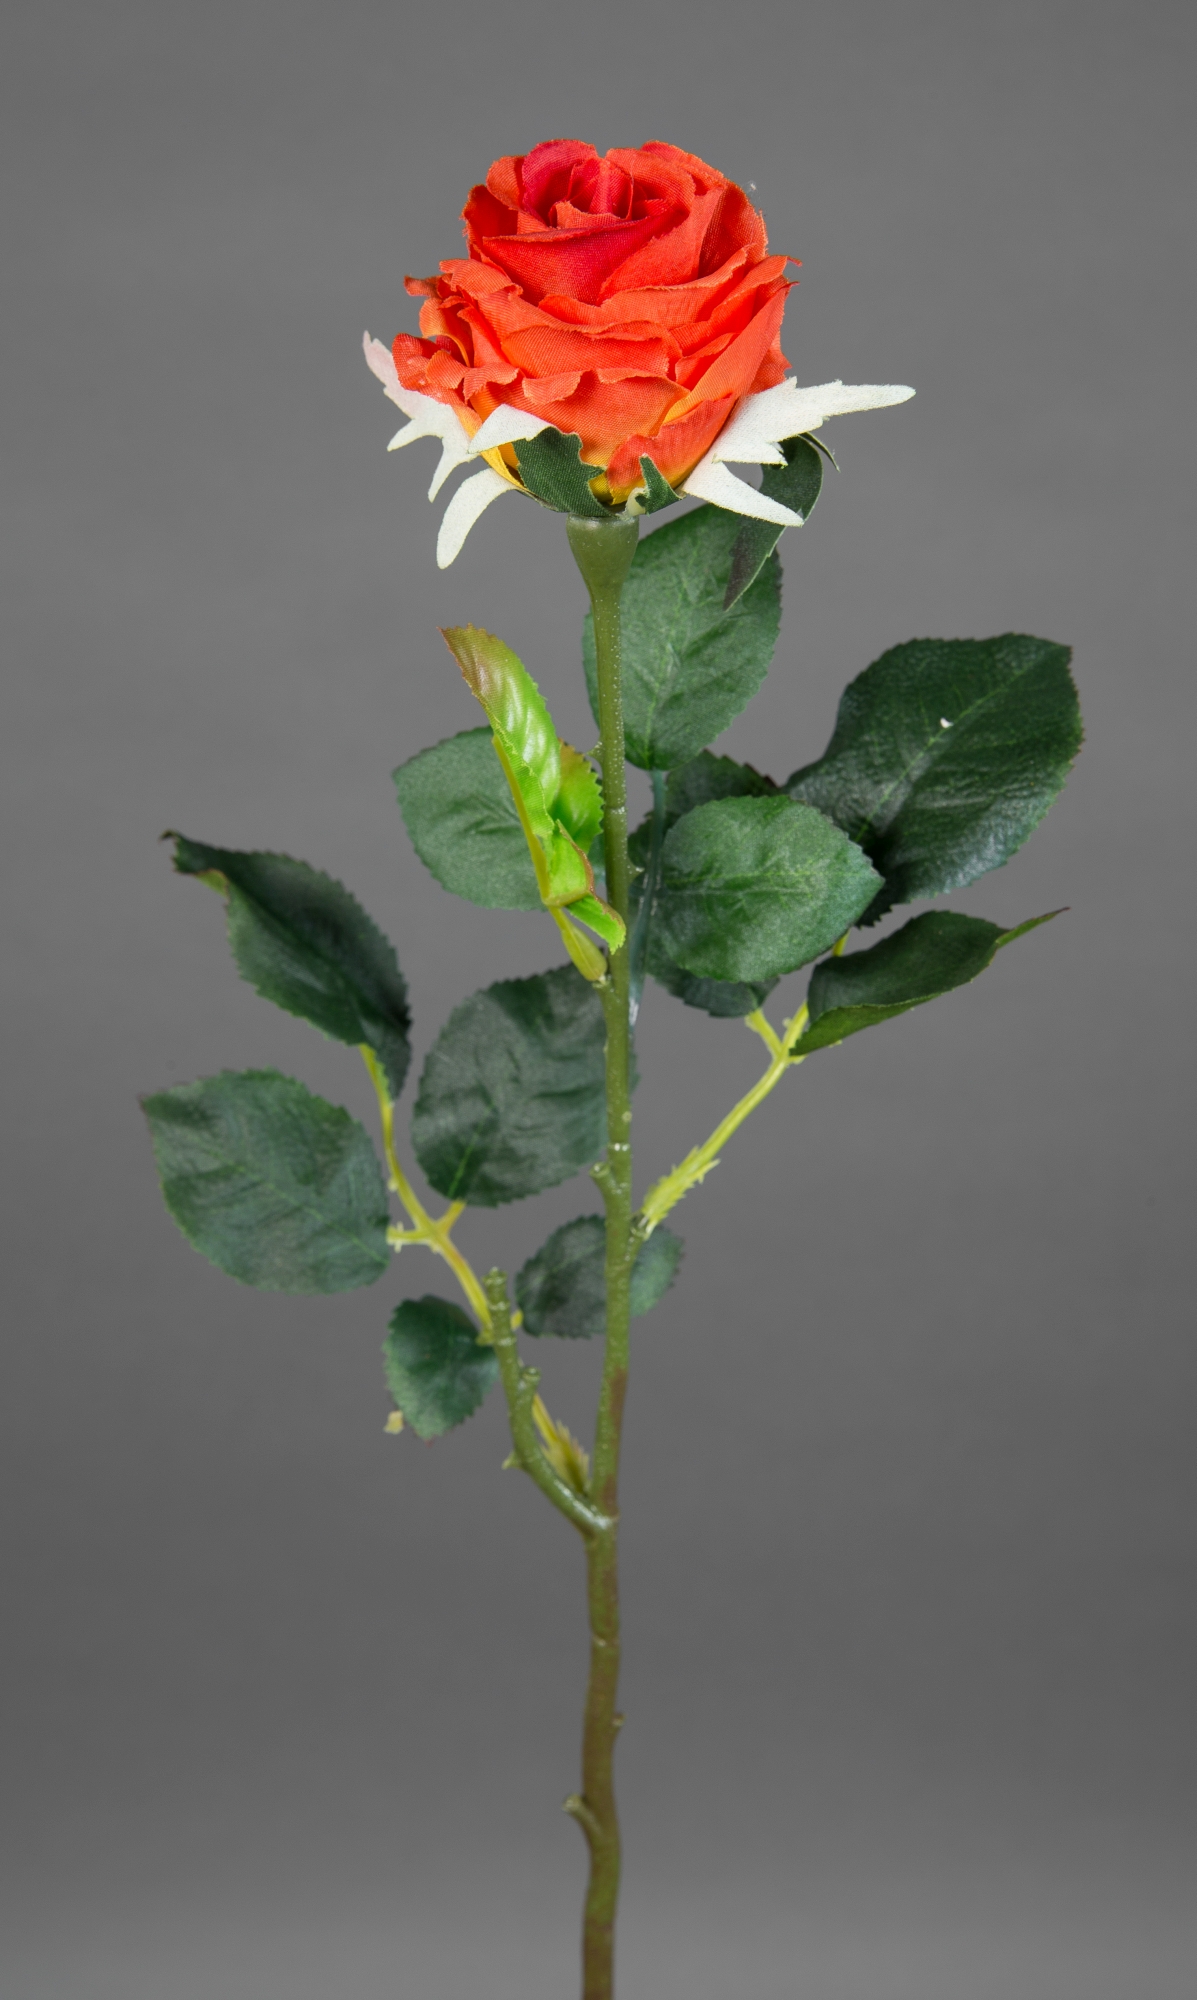 12 Stück Rose Elena 45cm orange PM Seidenblumen Kunstblumen künstliche Blumen Rosen